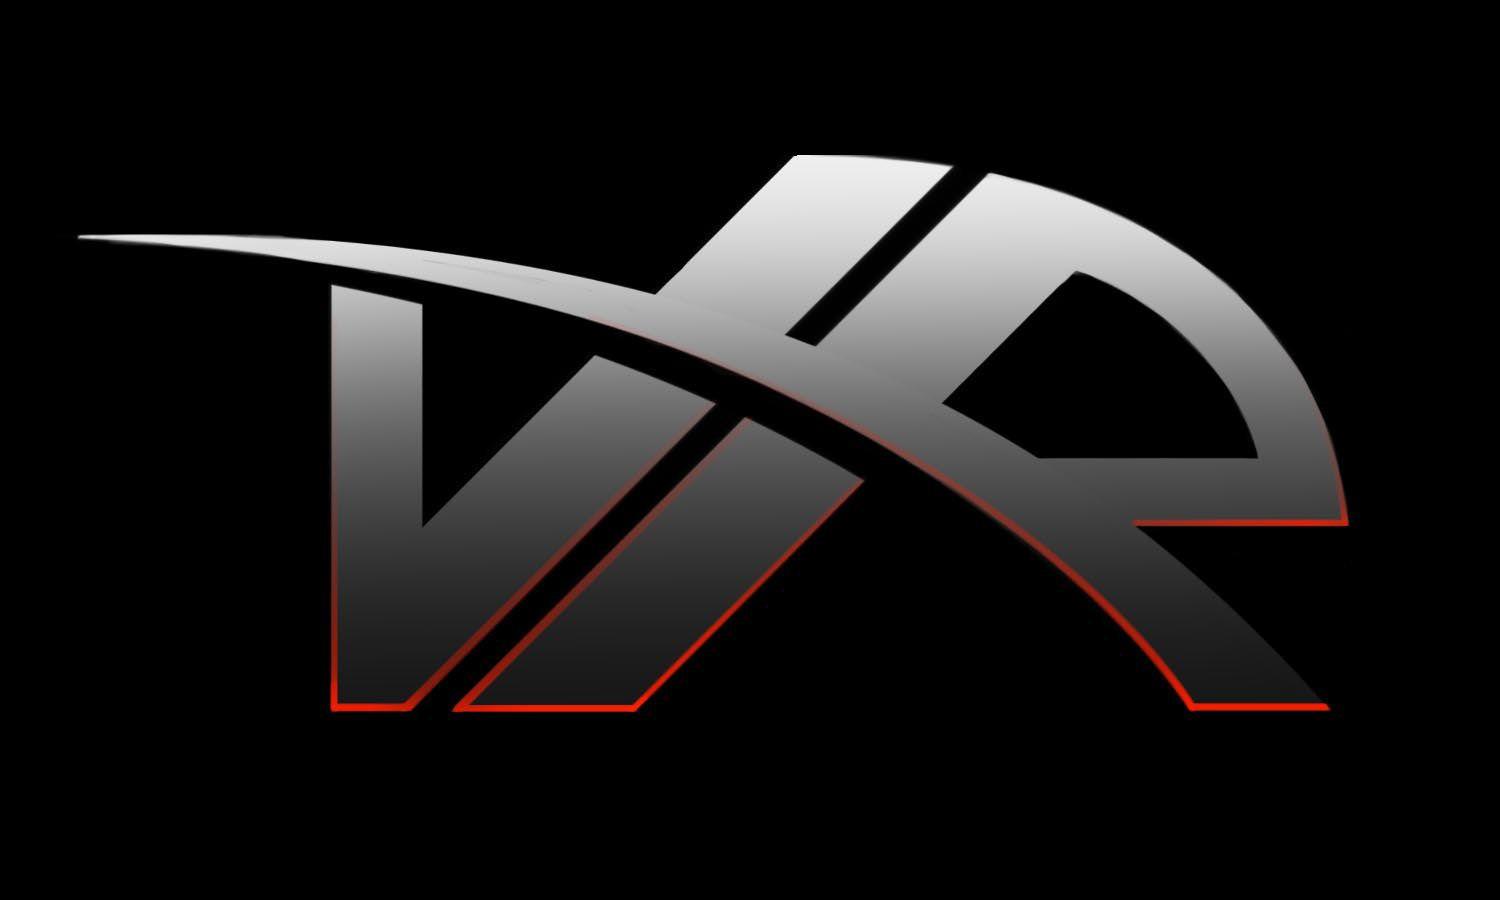 Velociraptor Logo - Nick Kubash and Graphic Art